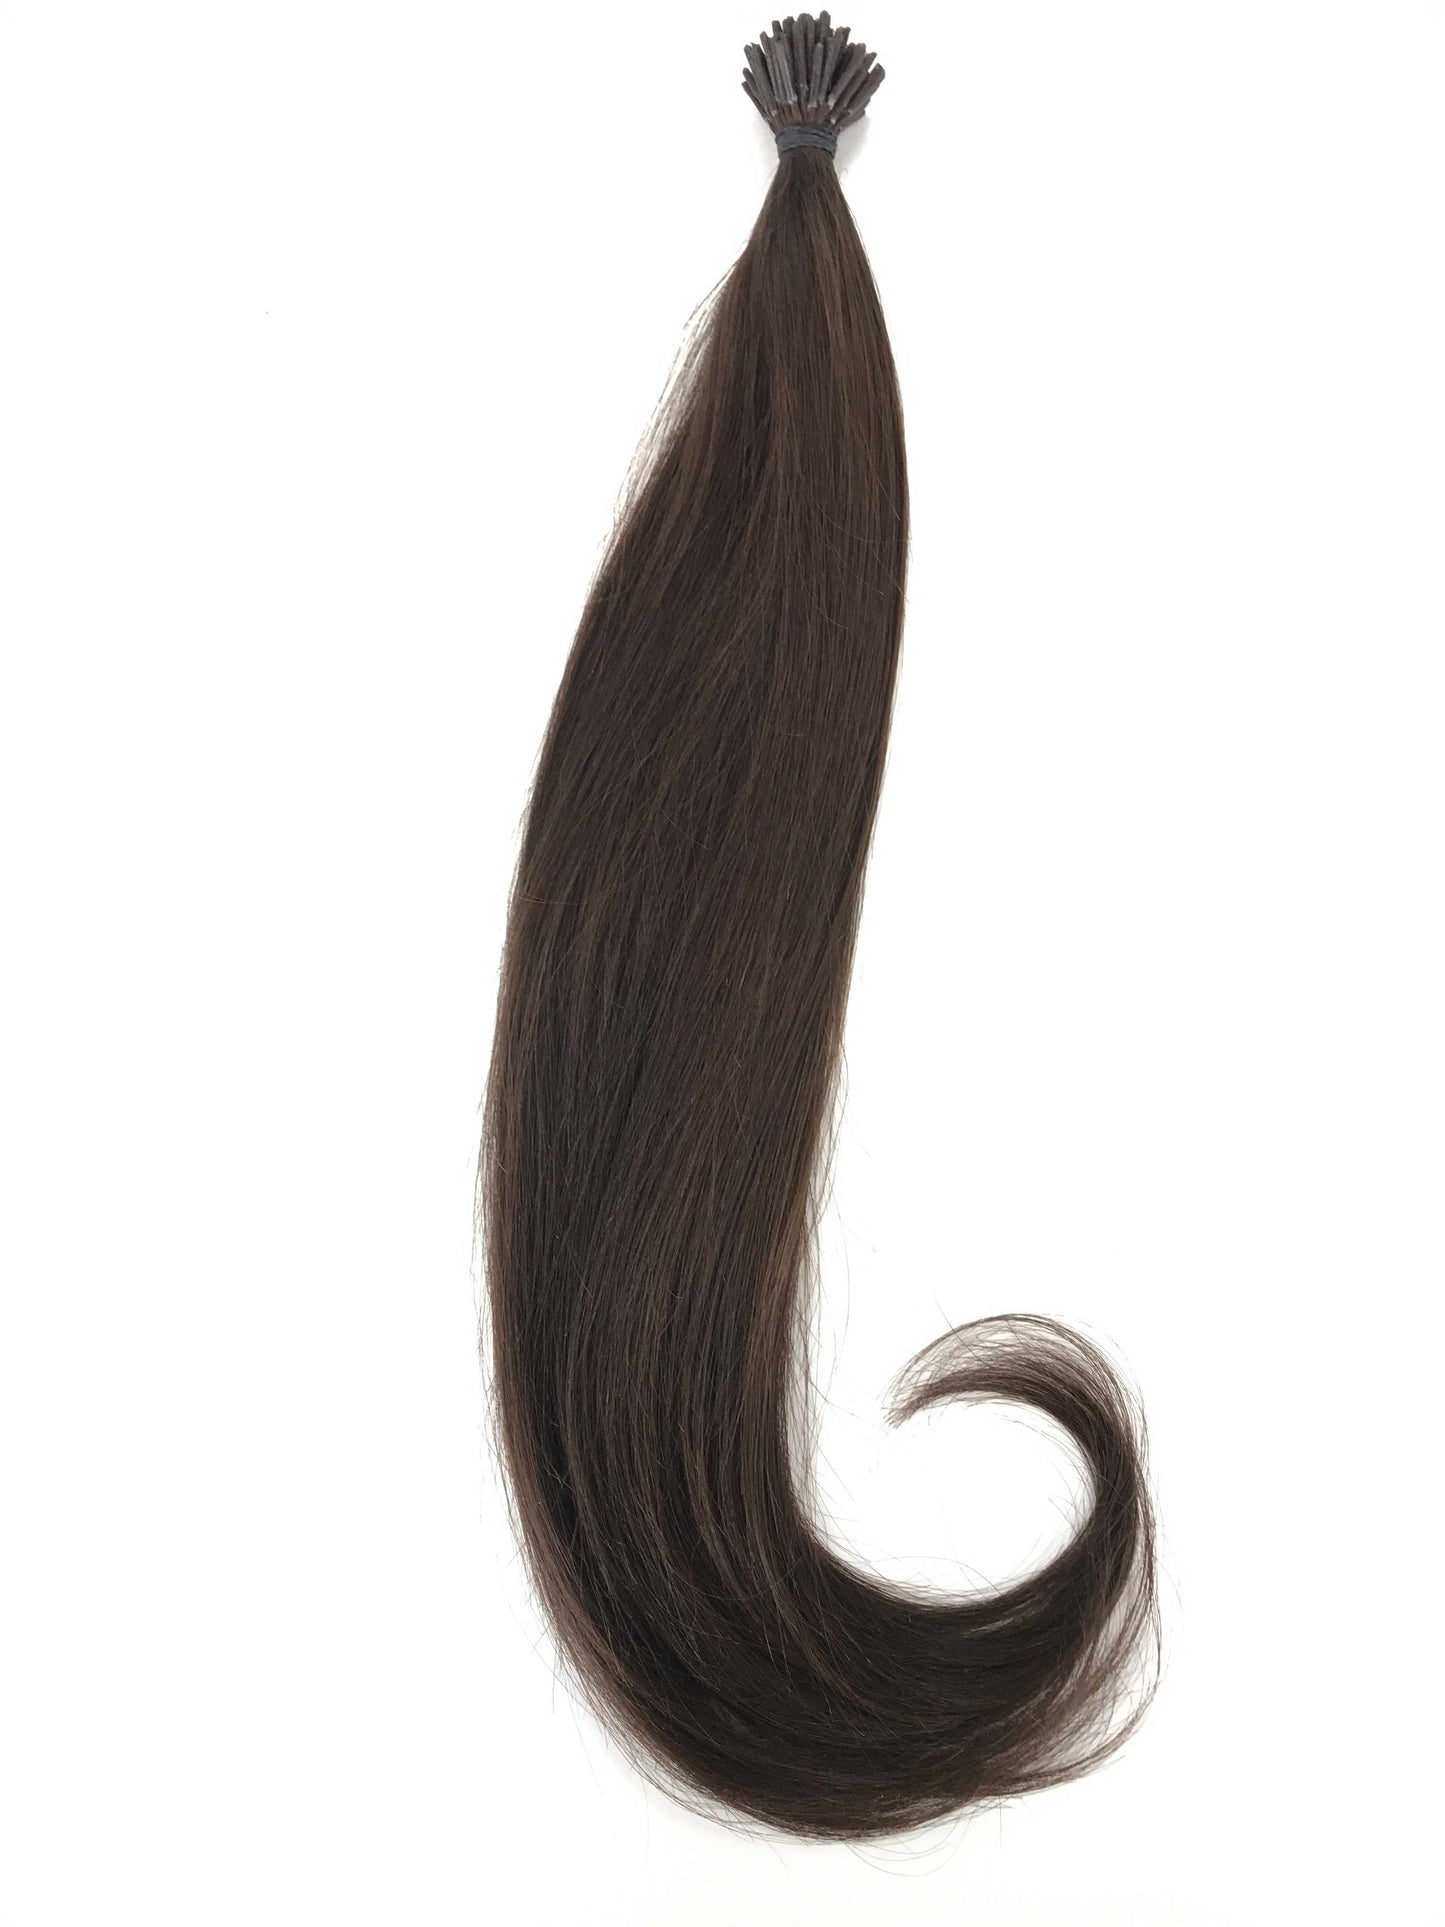 תוספות שיער אנושיות בתולה רוסית, 0.7 גרם i-Tip Micro Rings-שיער ויופי בתולה, תוספות השיער הטובות ביותר, שיער אנושי בתולה אמיתי.